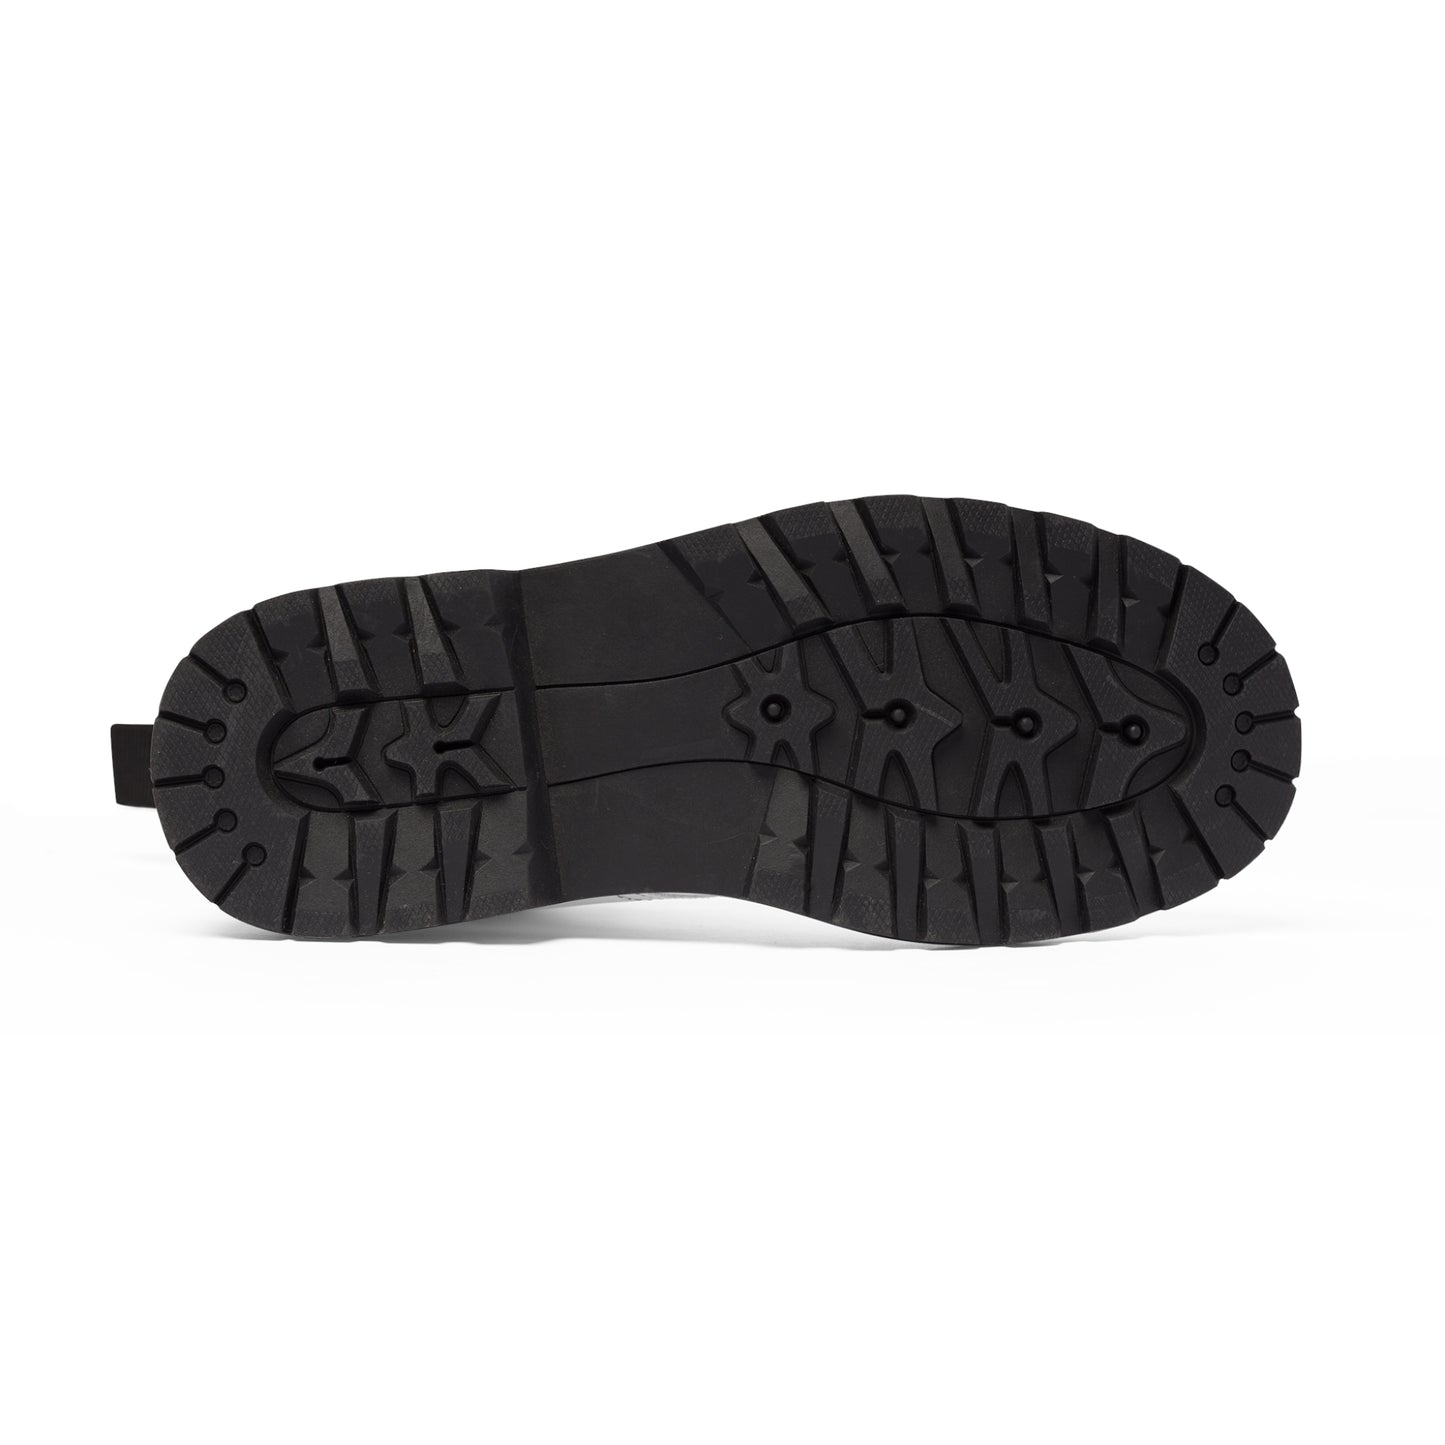 Women's Canvas Boots - 02865 US 11 Black sole